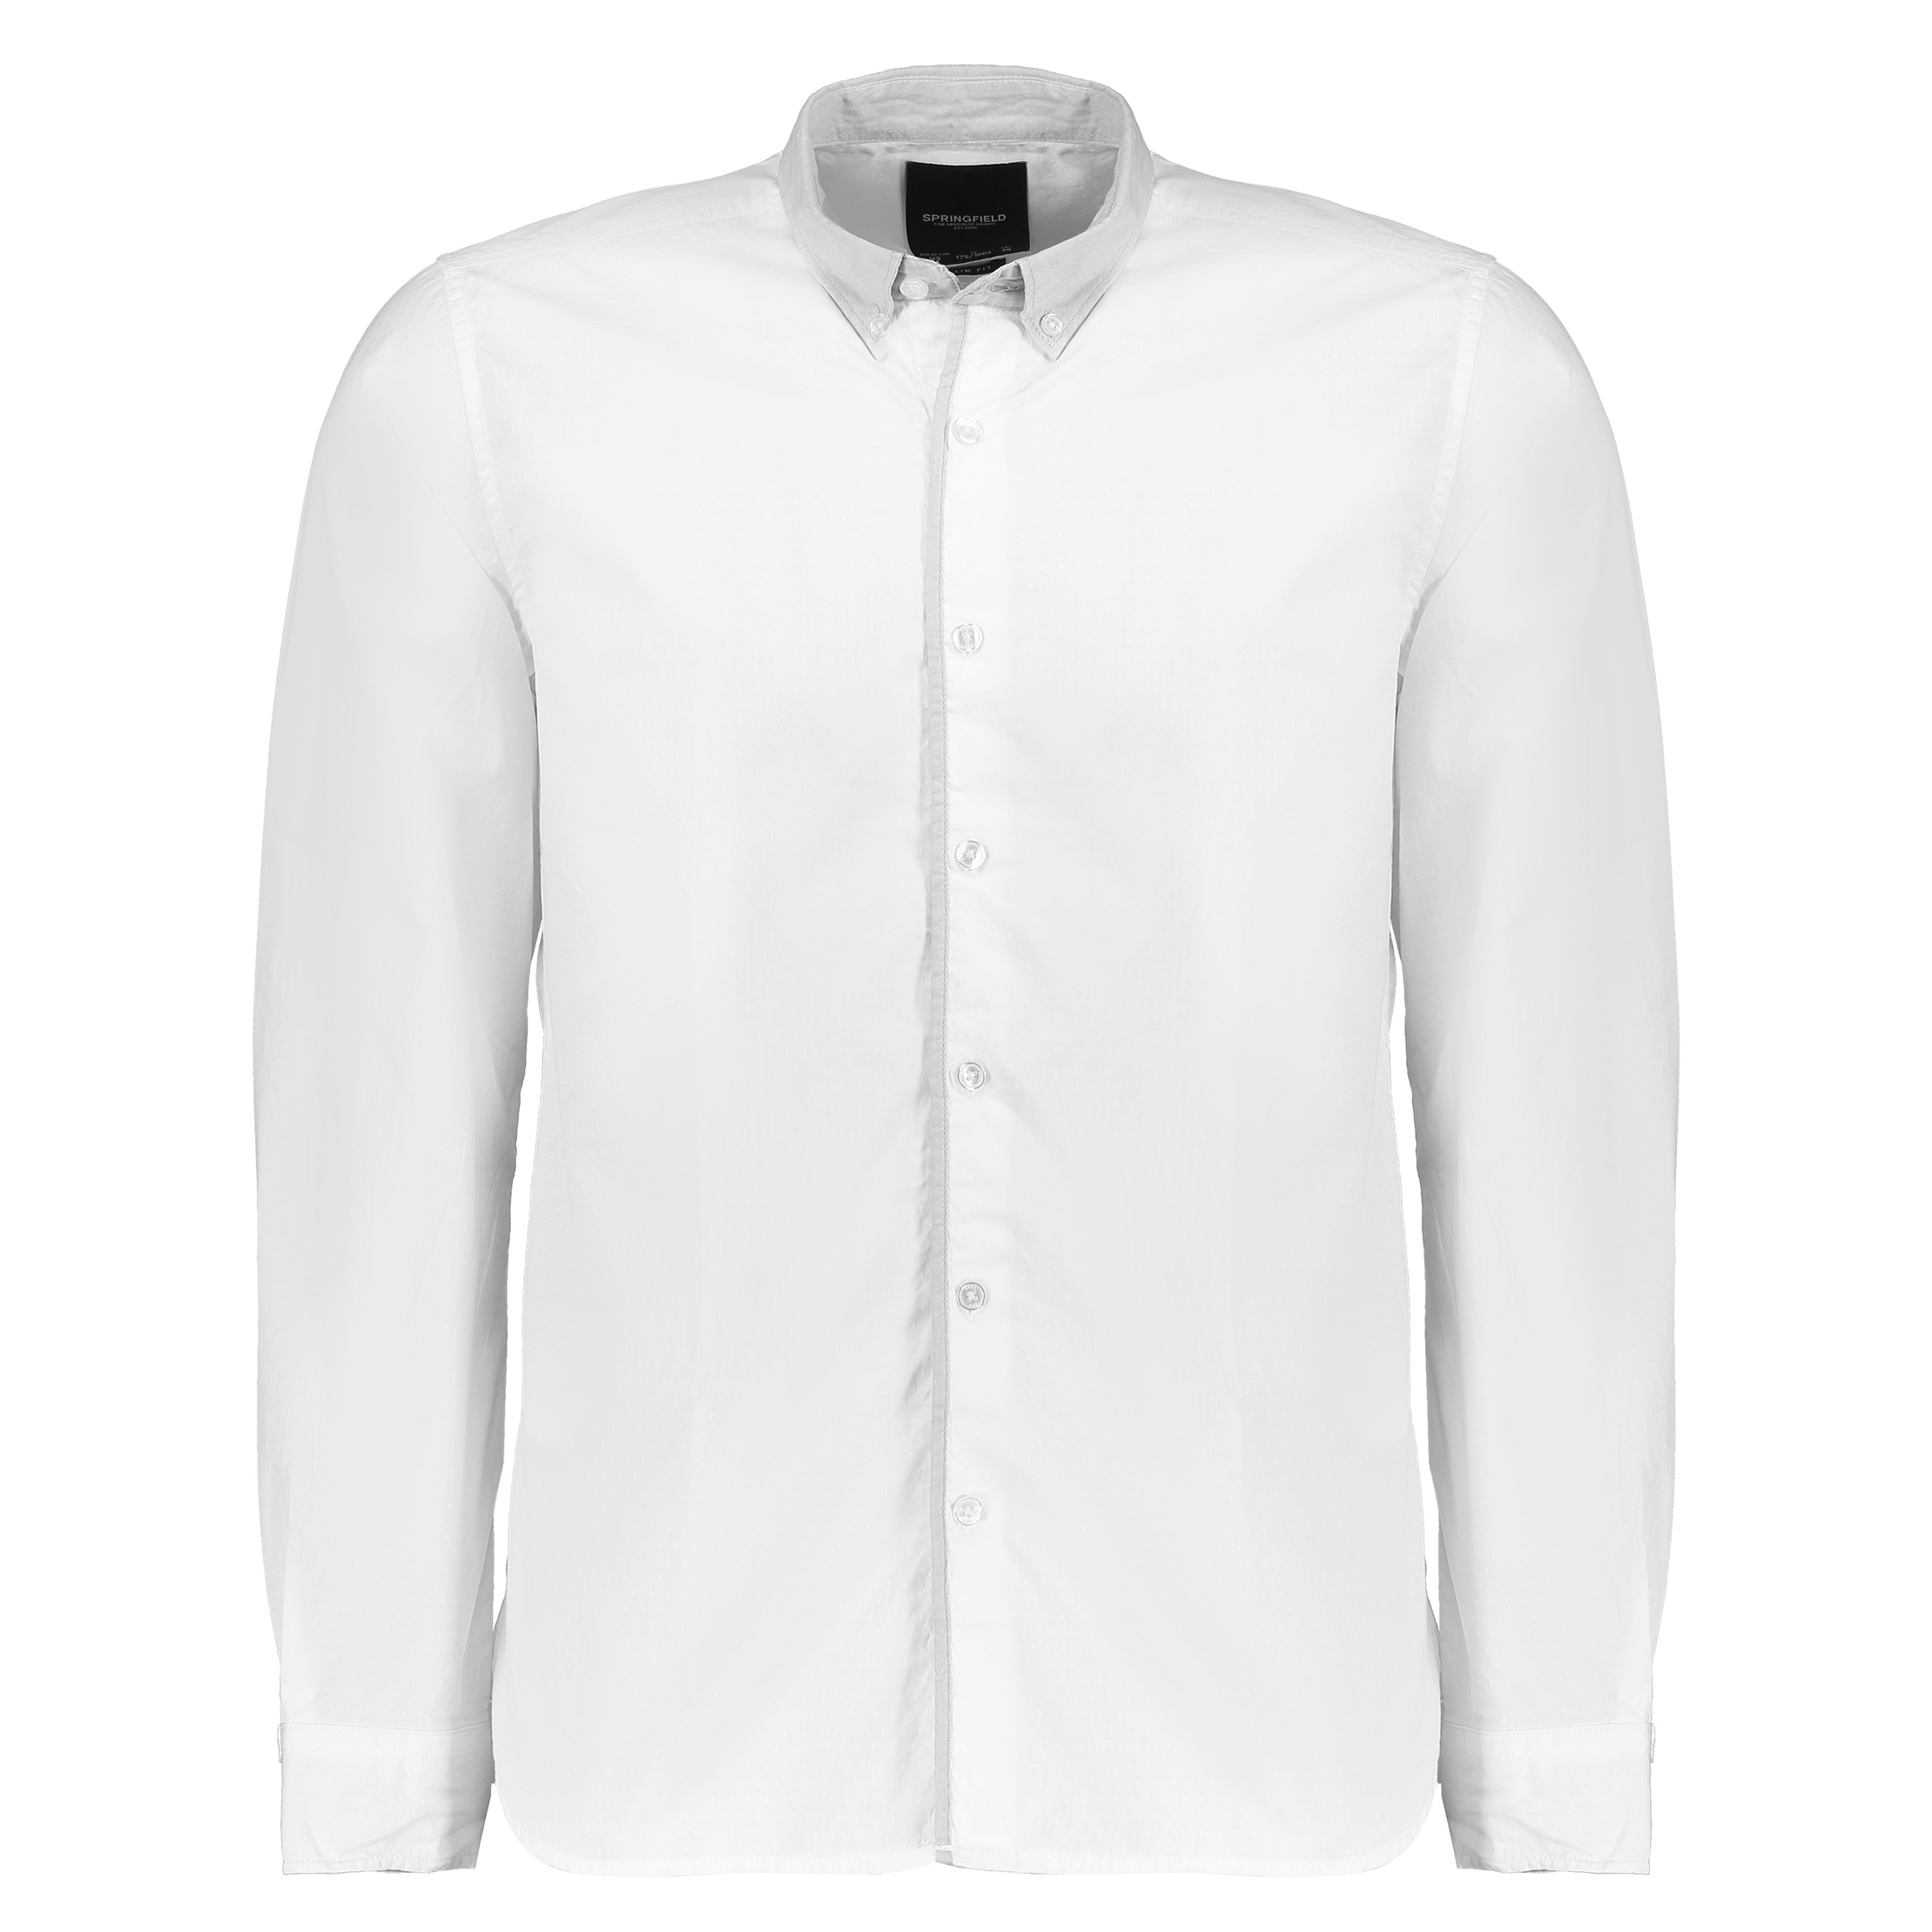 پیراهن مردانه اسپرینگ فیلد مدل 1506544-99 - سفید - 1